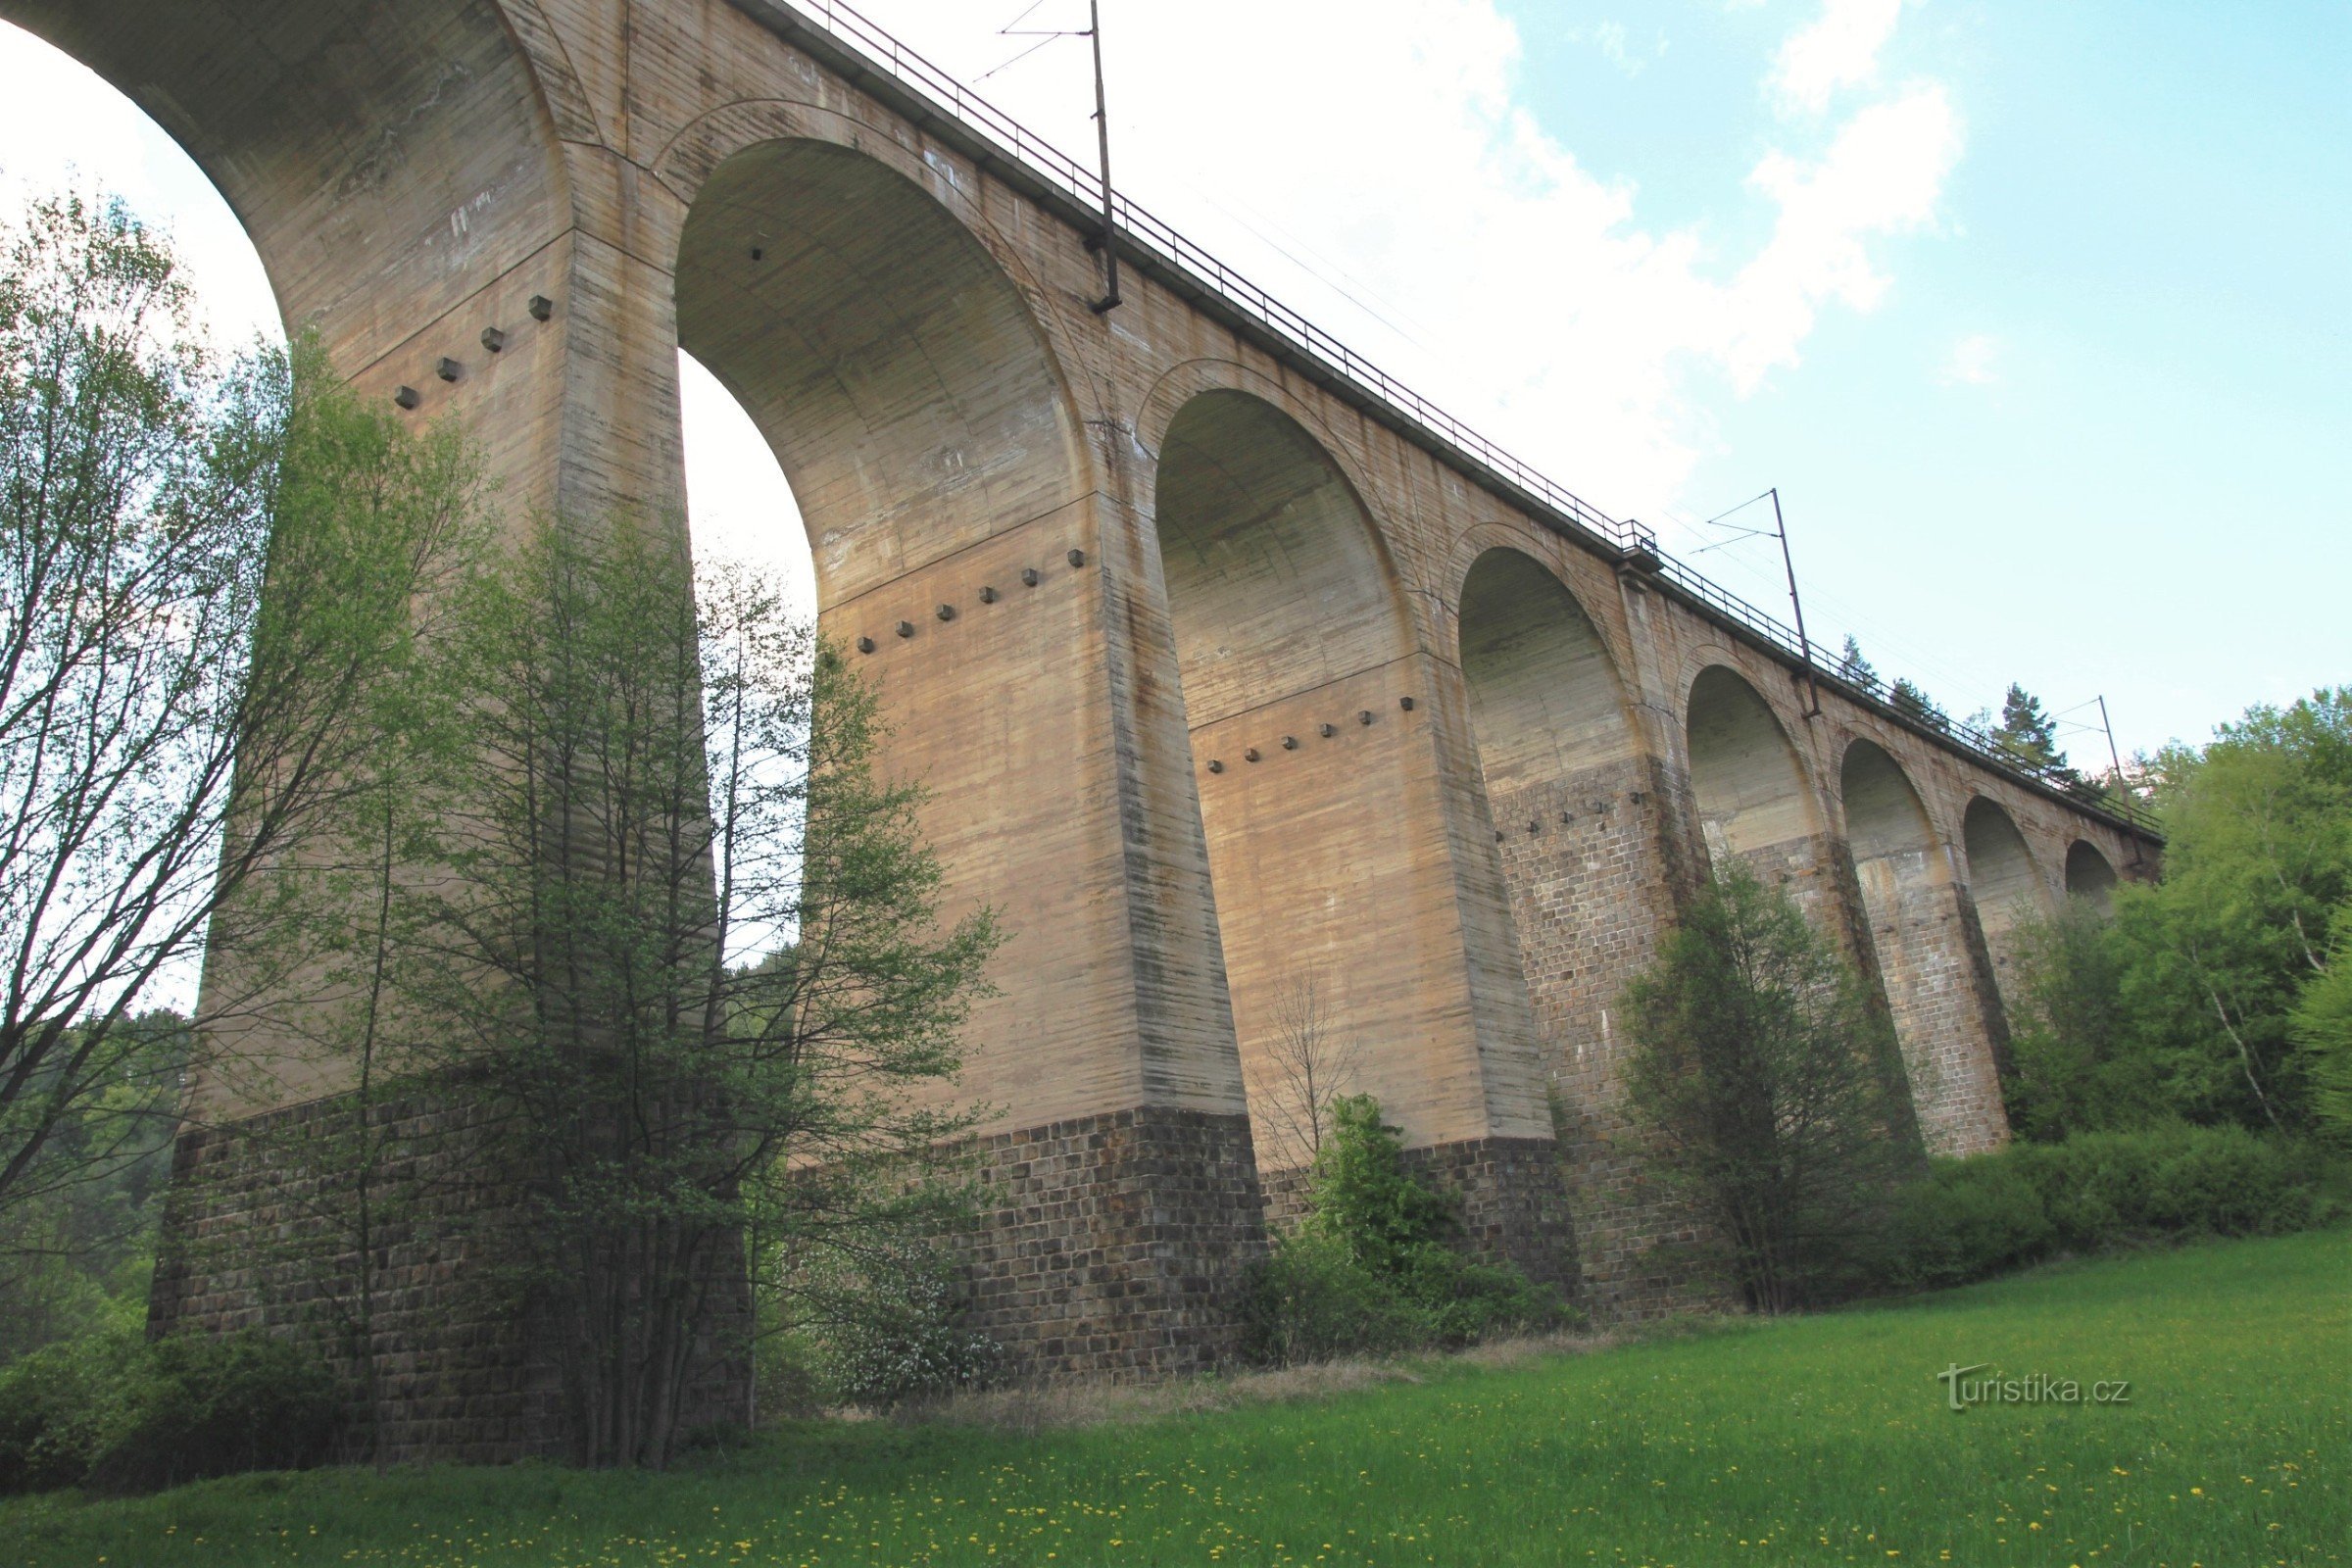 リボホフカ川の広い谷を渡る大きな高架橋